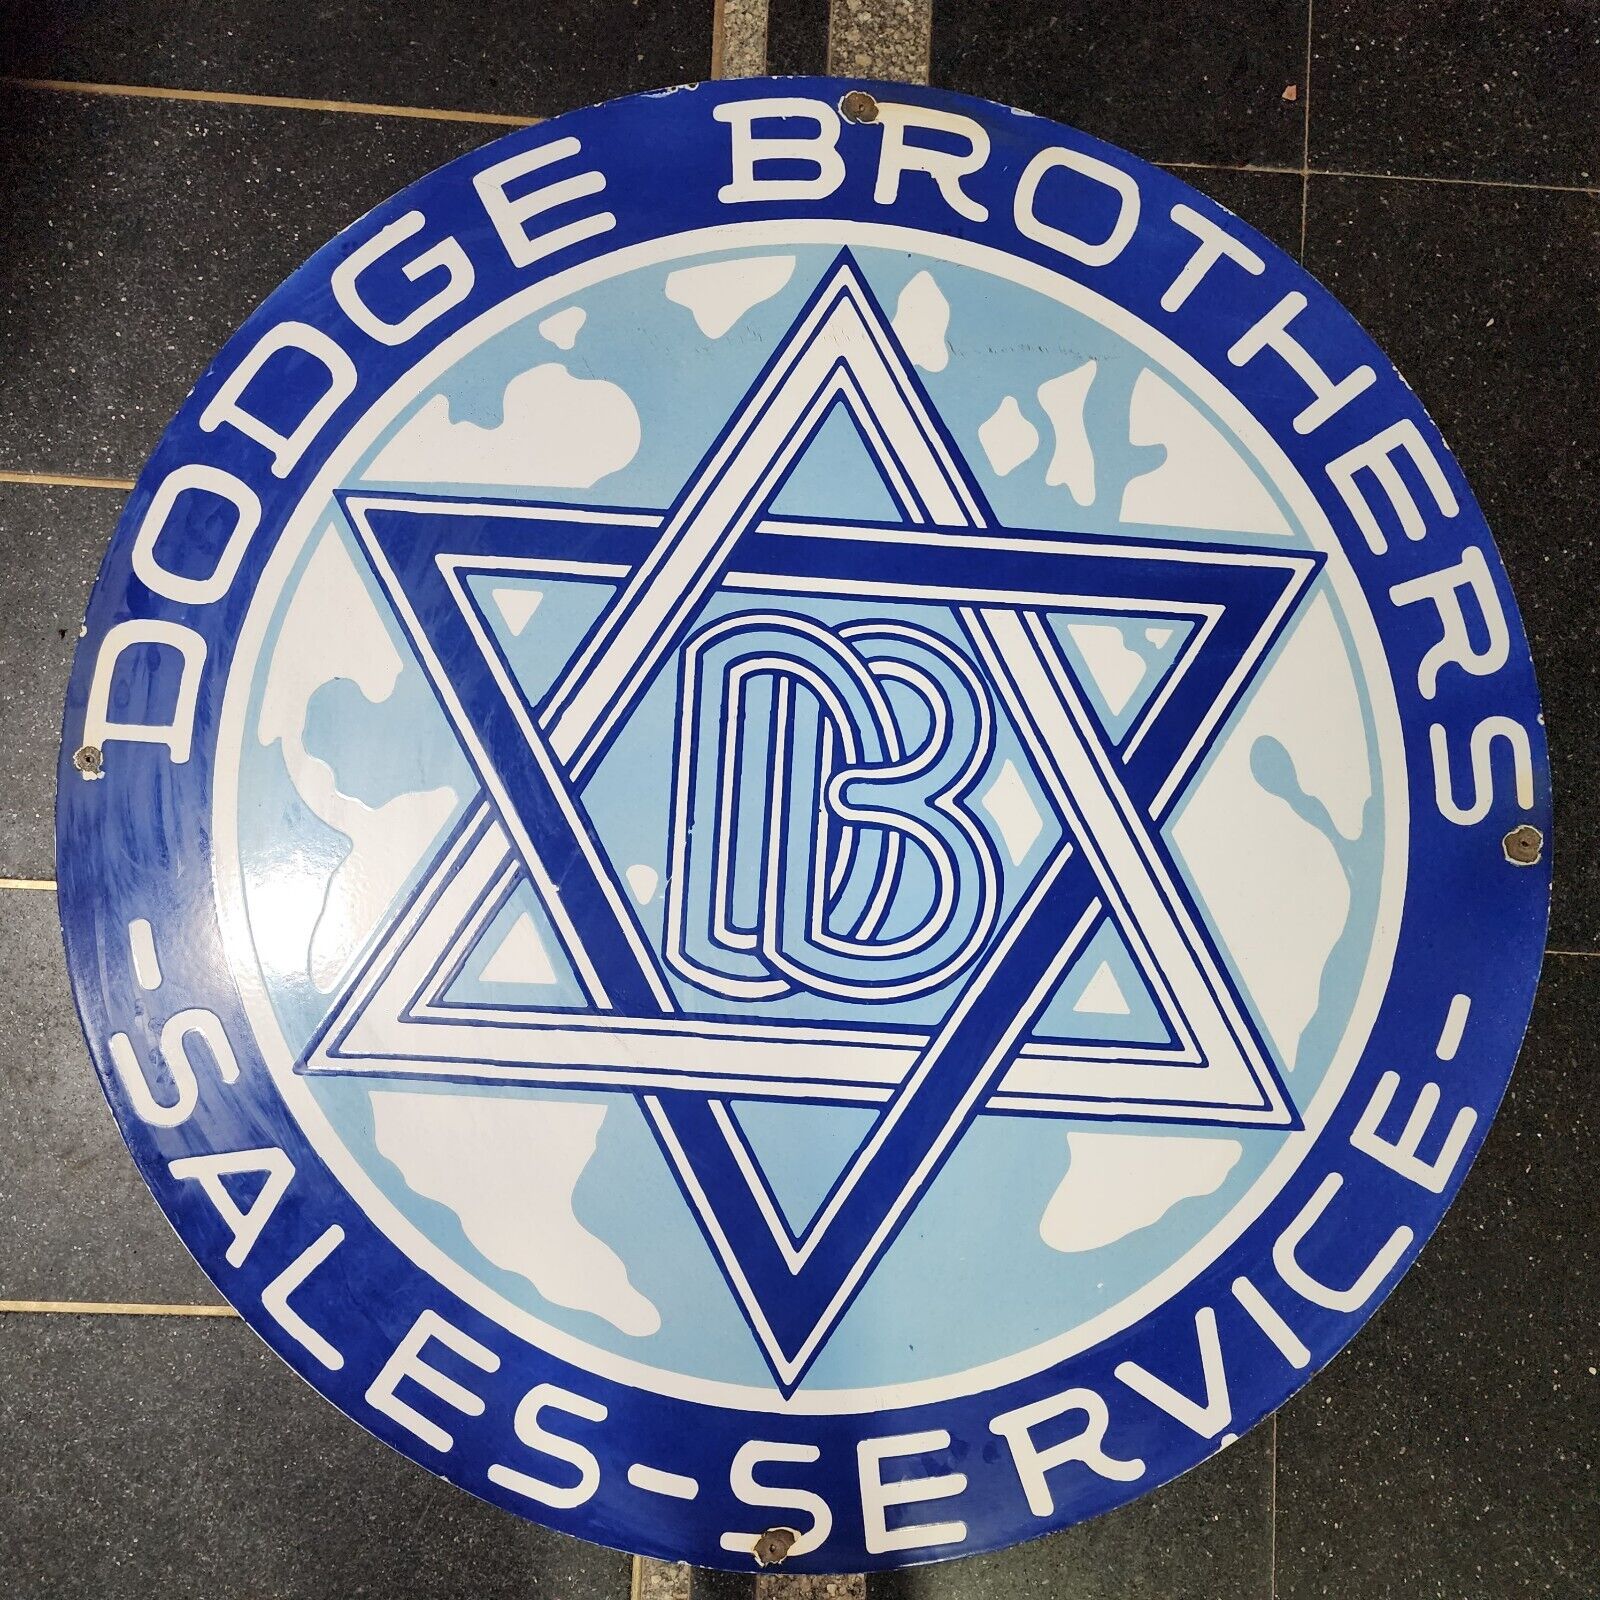 DODGE BROTHERS PORCELAIN ENAMEL SIGN 114 CM ROUND